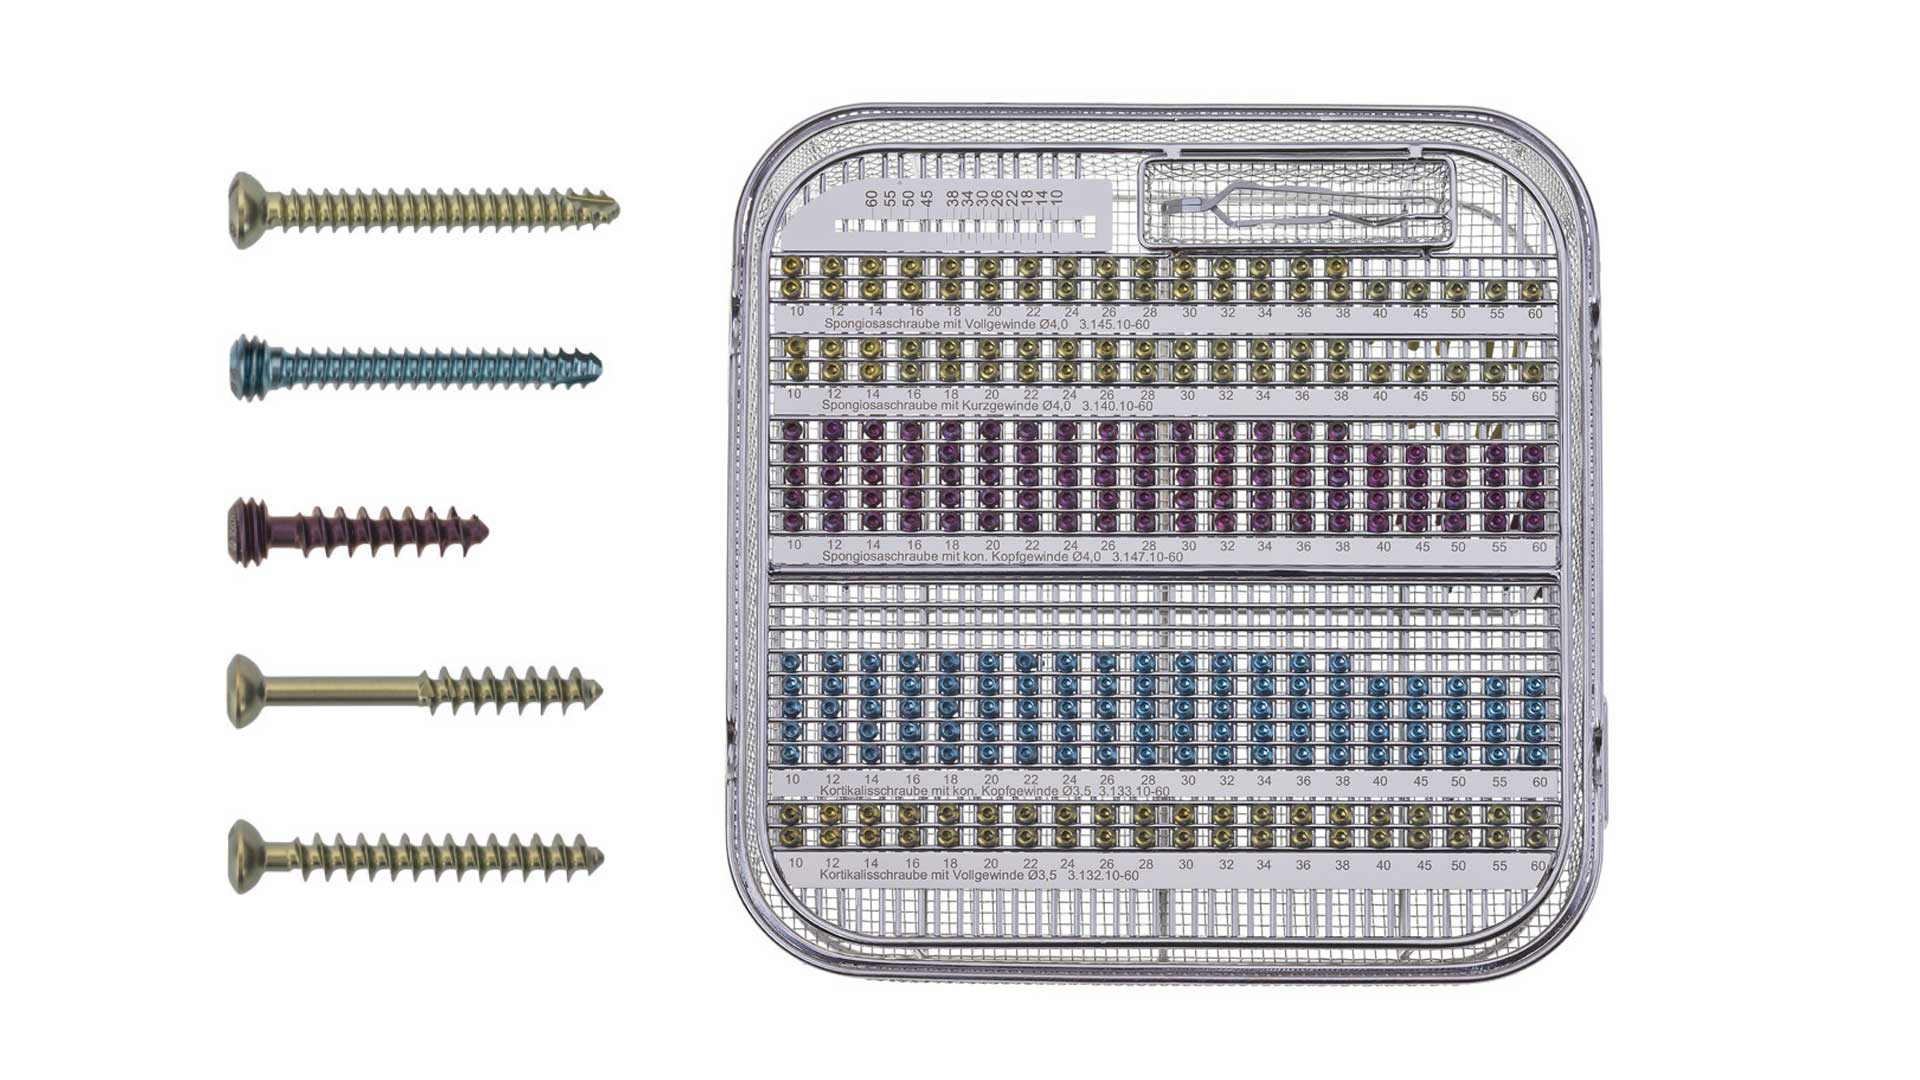 Königsee Implantate Produkte: Set Schrauben ws 3.5/4.0 ISK Spongiosa 4.0 Titan; aus der Kategorie Schrauben